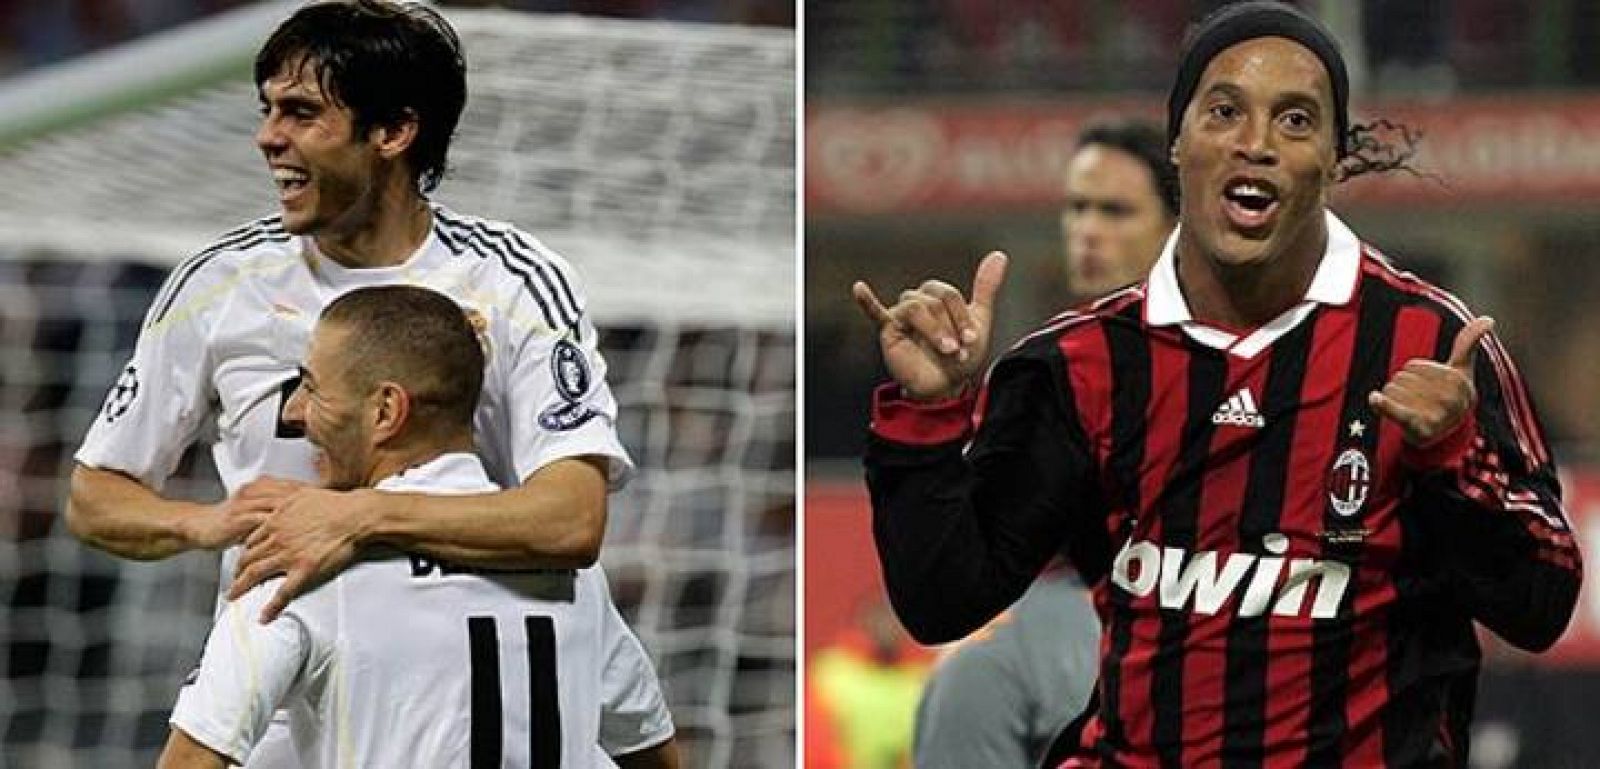 El duelo entre Real Madrid y Milán siempre depara grandes noches de Champions.